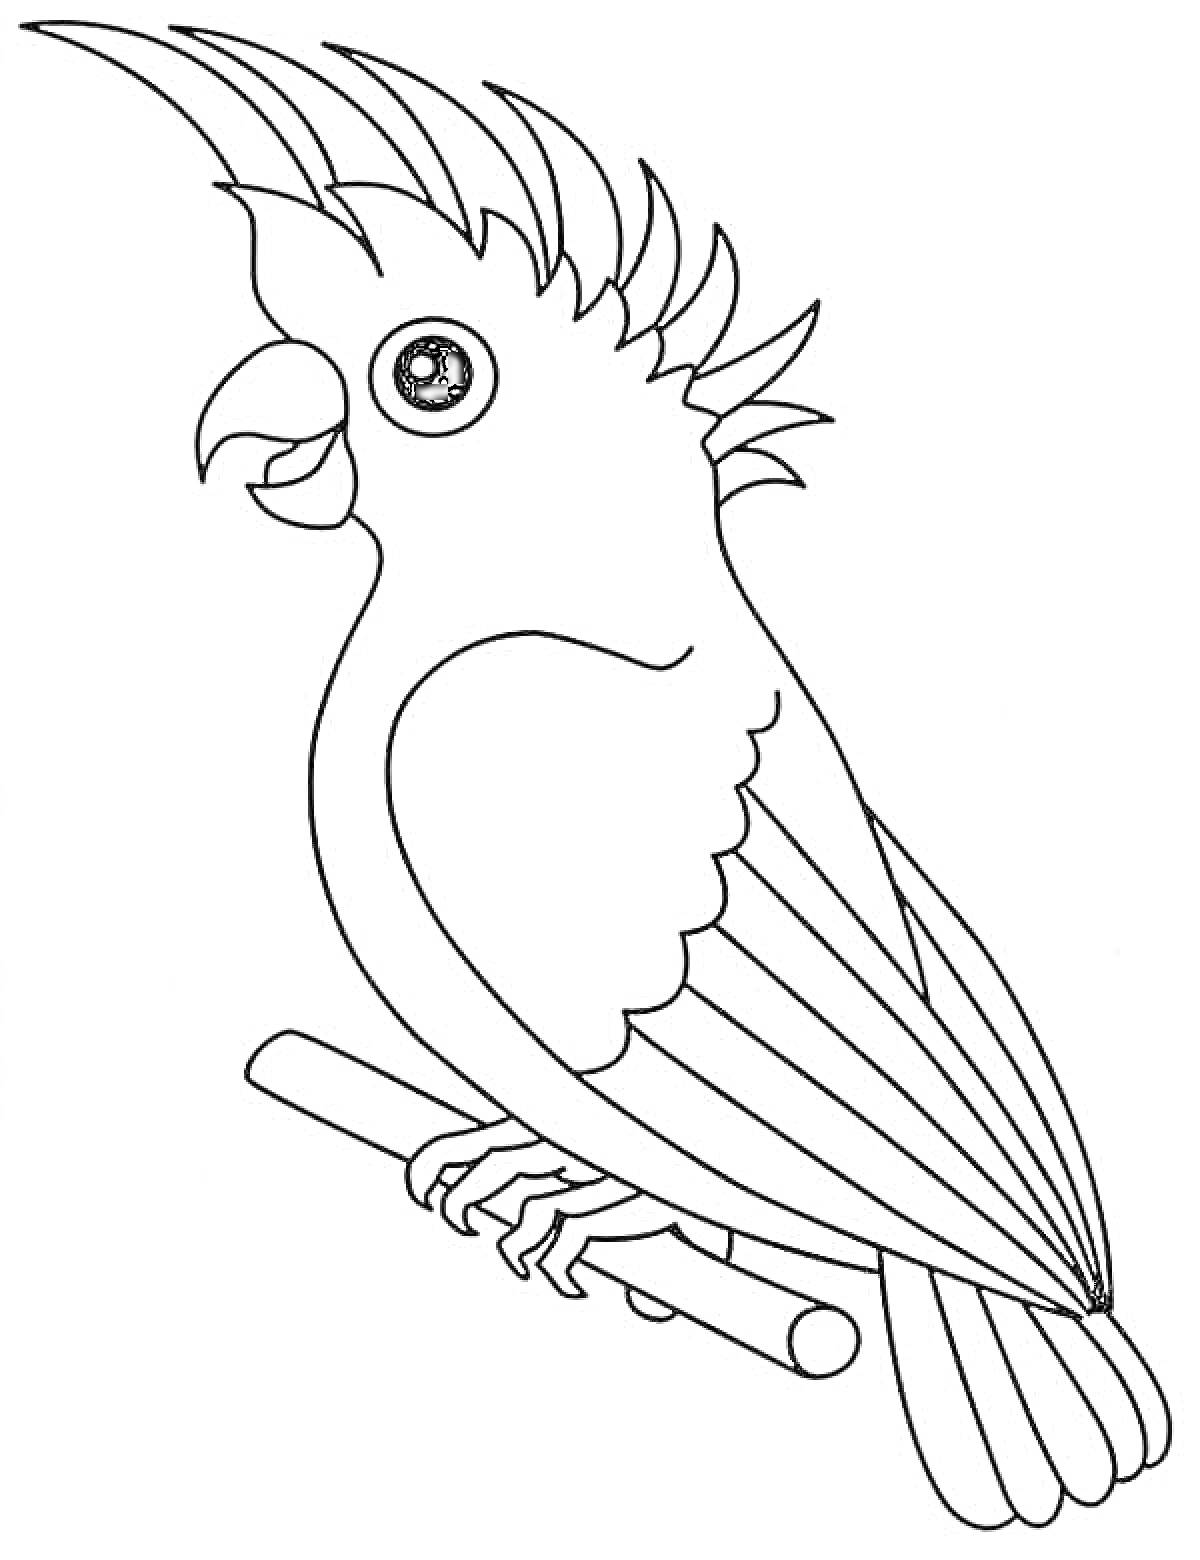 Попугай на ветке с поднятым хохолком